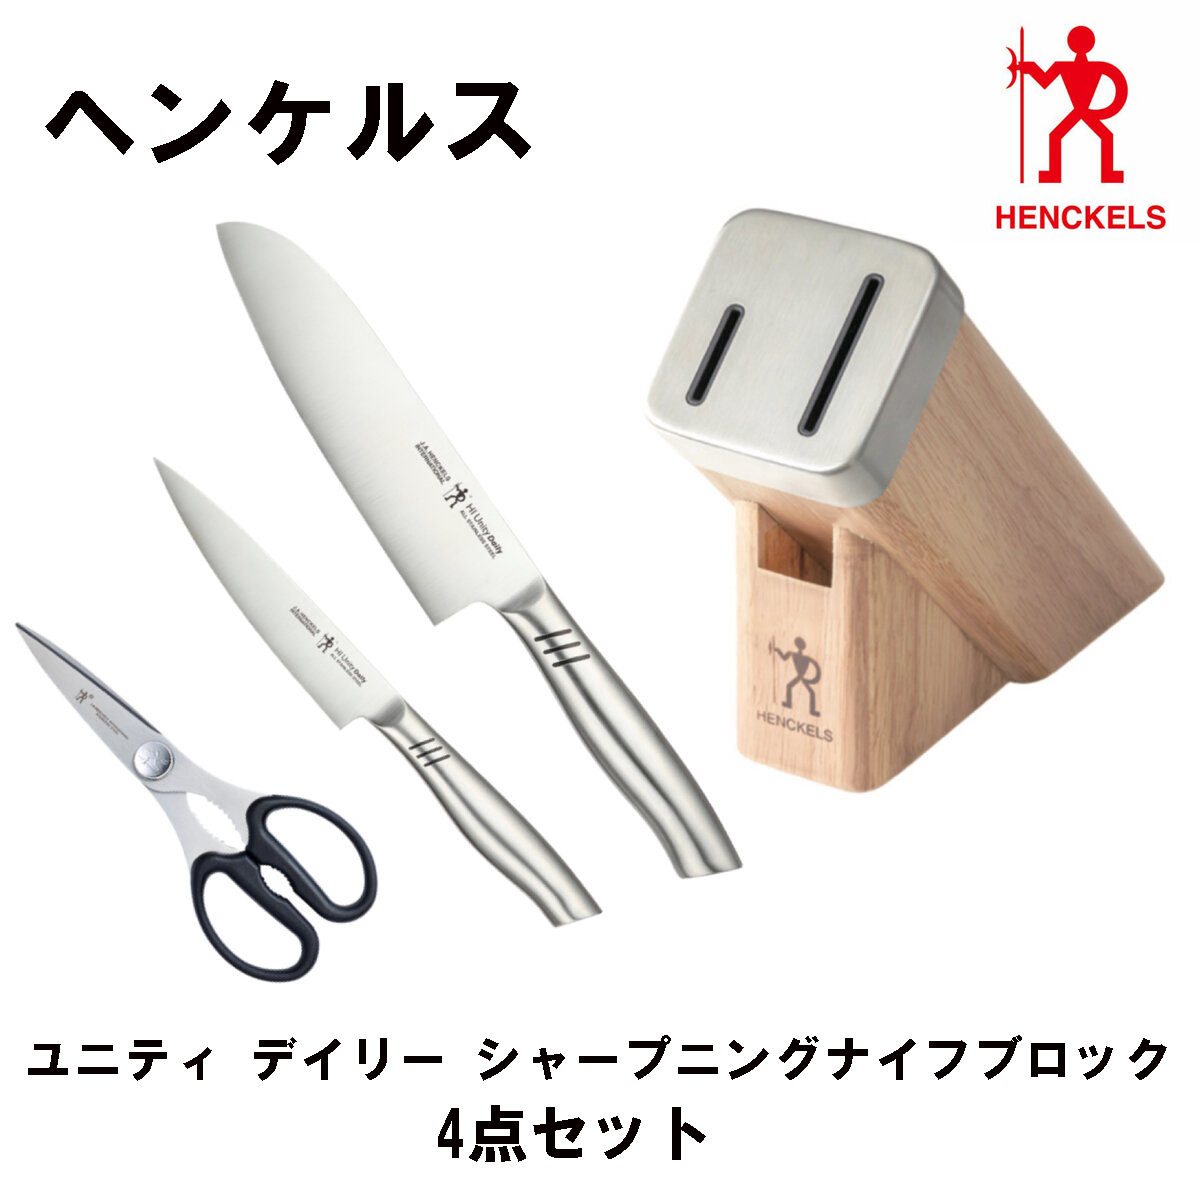 安いアウトレット店舗 【送料無料】ツヴィリング ナイフ 白5セット ブロック 調理器具